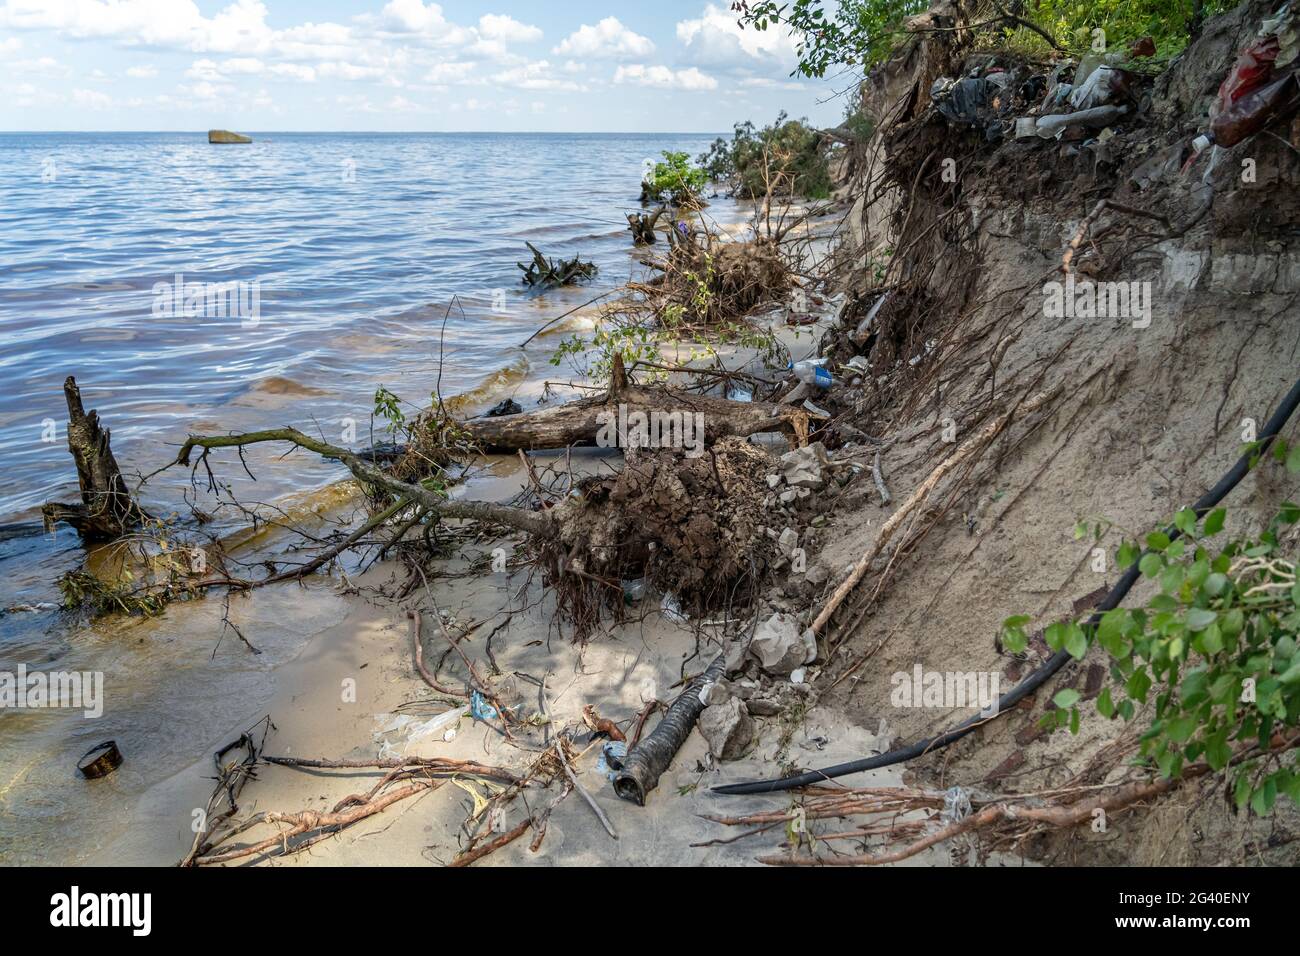 Müll an der Küste Dnjepr Fluss in der Ukraine bei Kiew. Kontamination der Umwelt durch den Menschen. Die Leute haben Müll am Flussufer hinterlassen. Ökologische Katastrophe Stockfoto